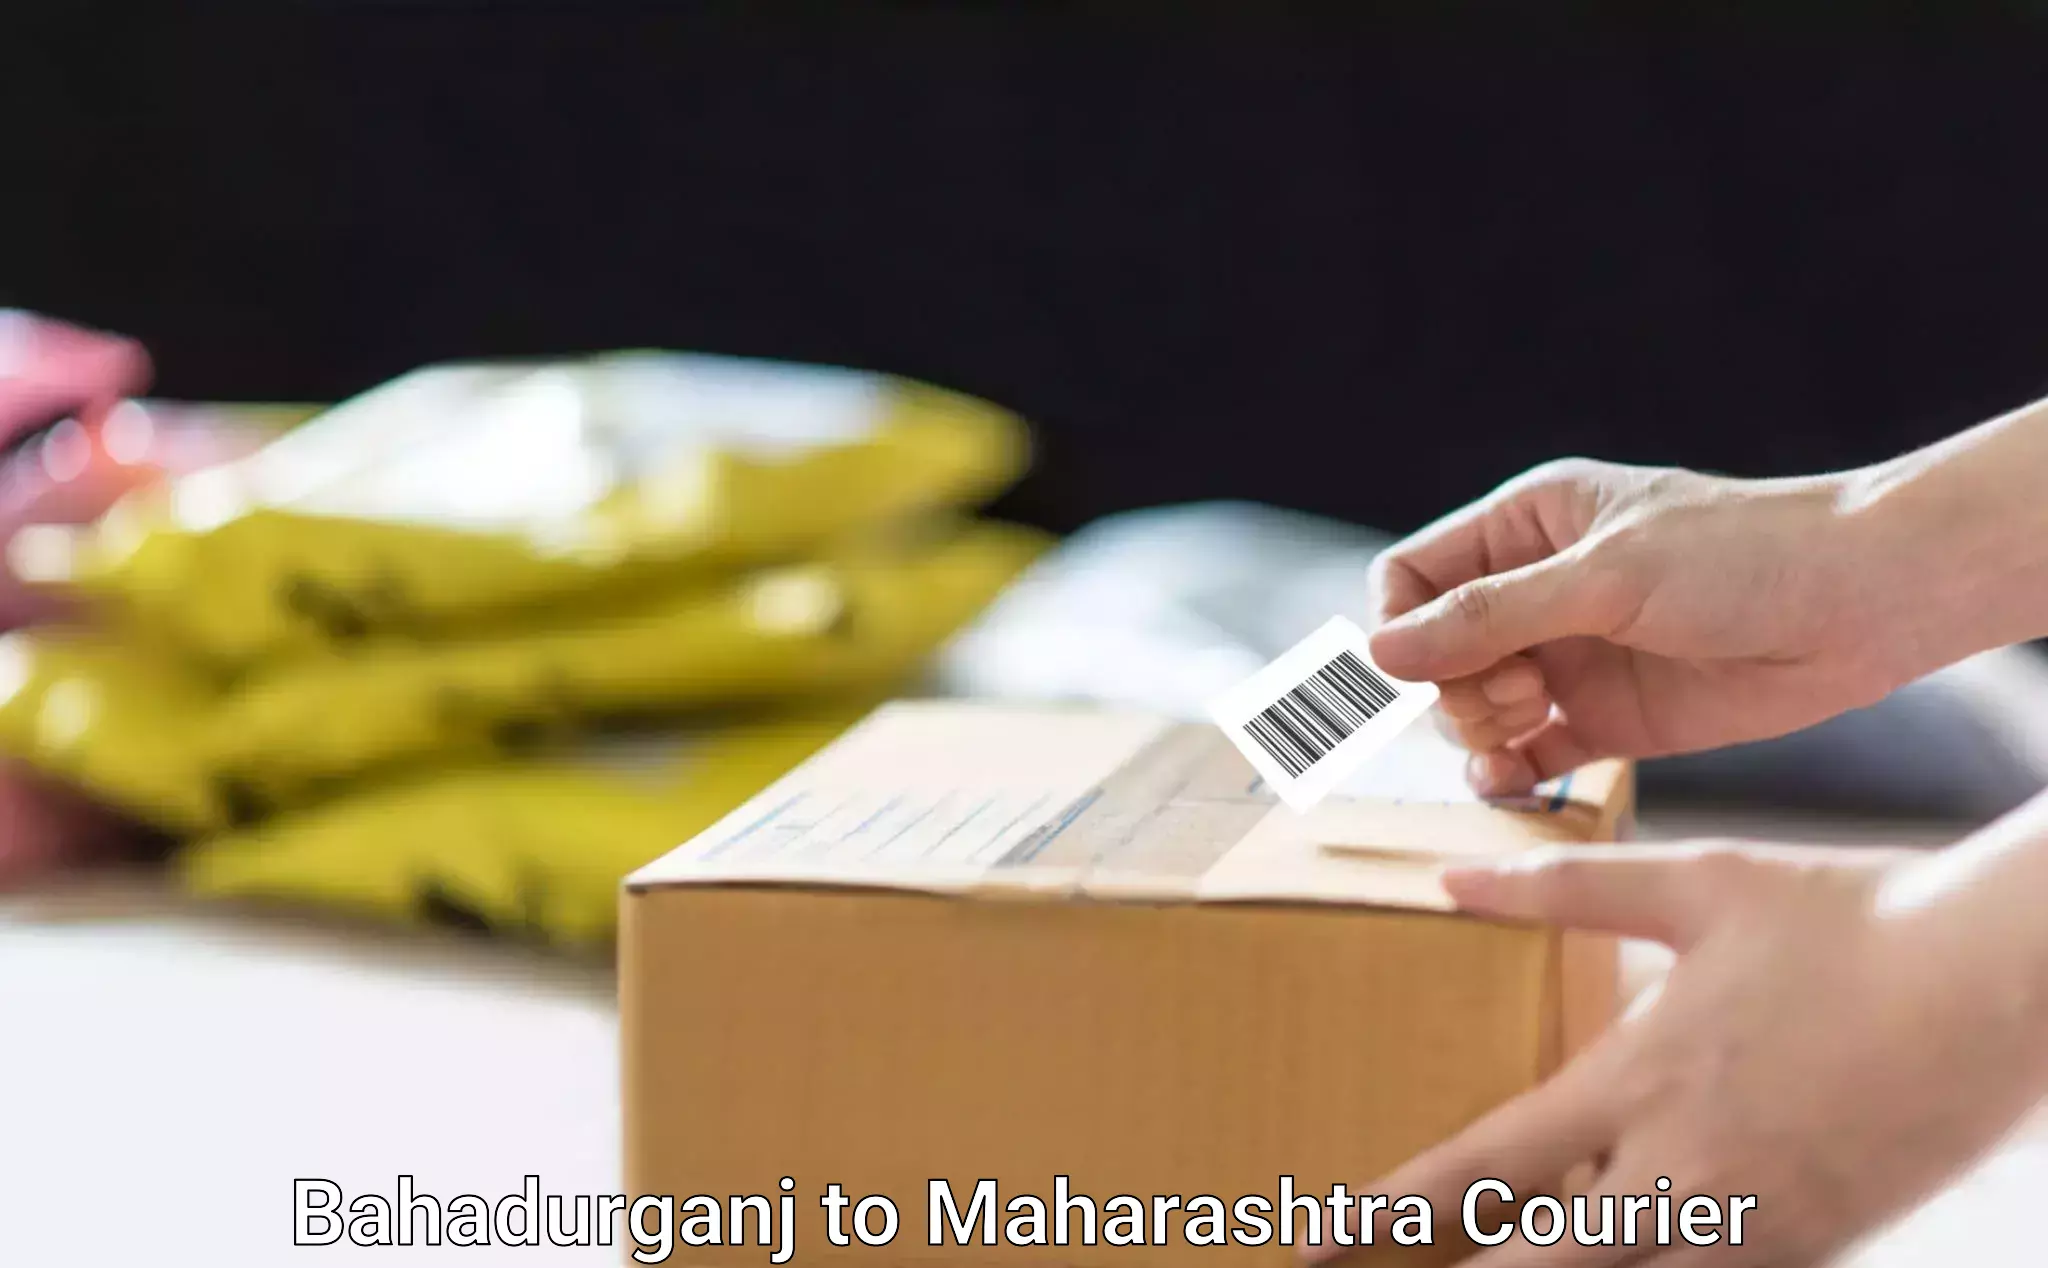 Home moving specialists Bahadurganj to Maharashtra